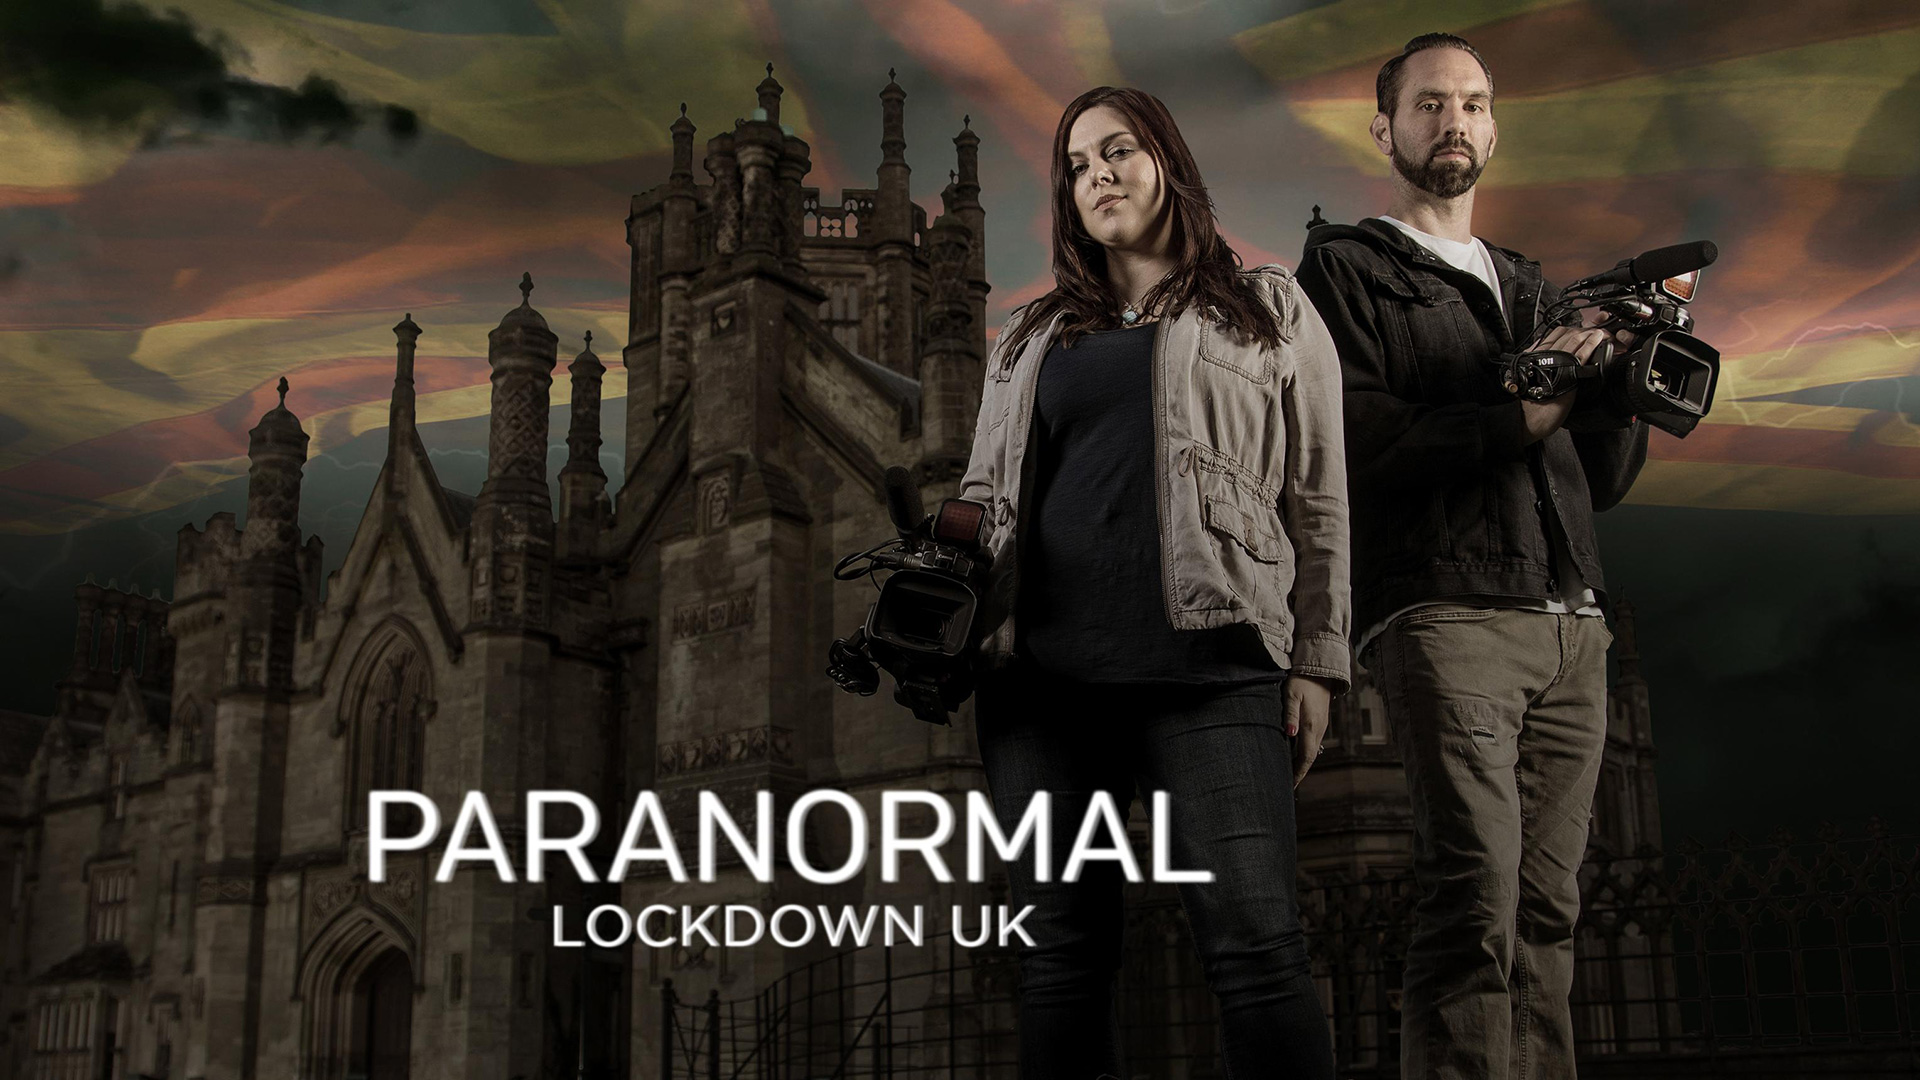 paranormal lockdown